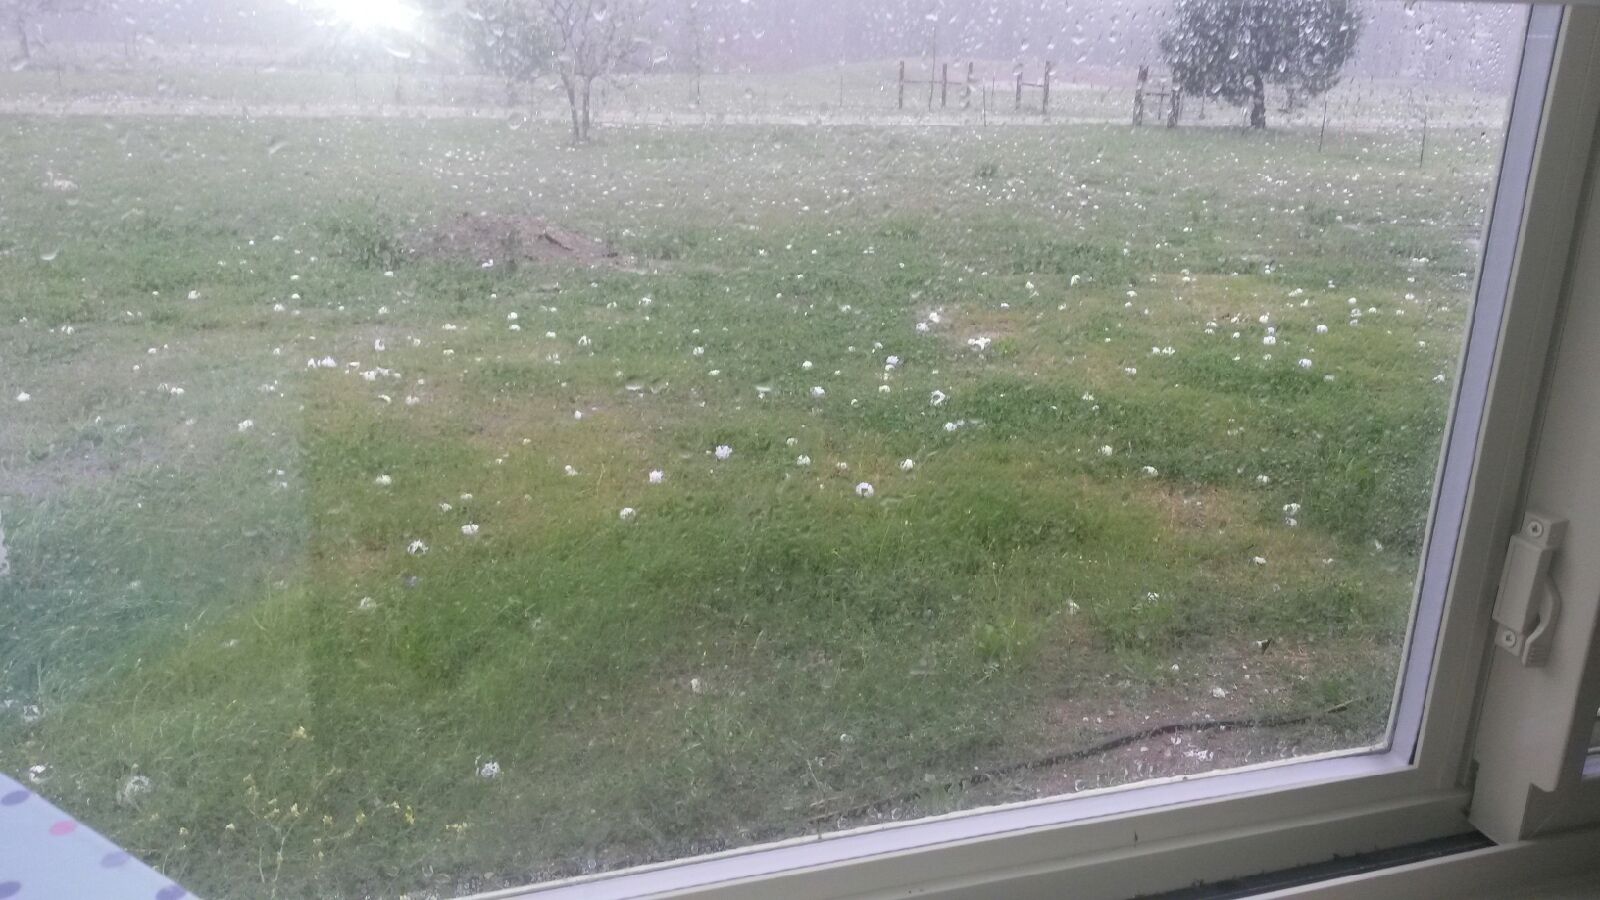 hailstones.jpg